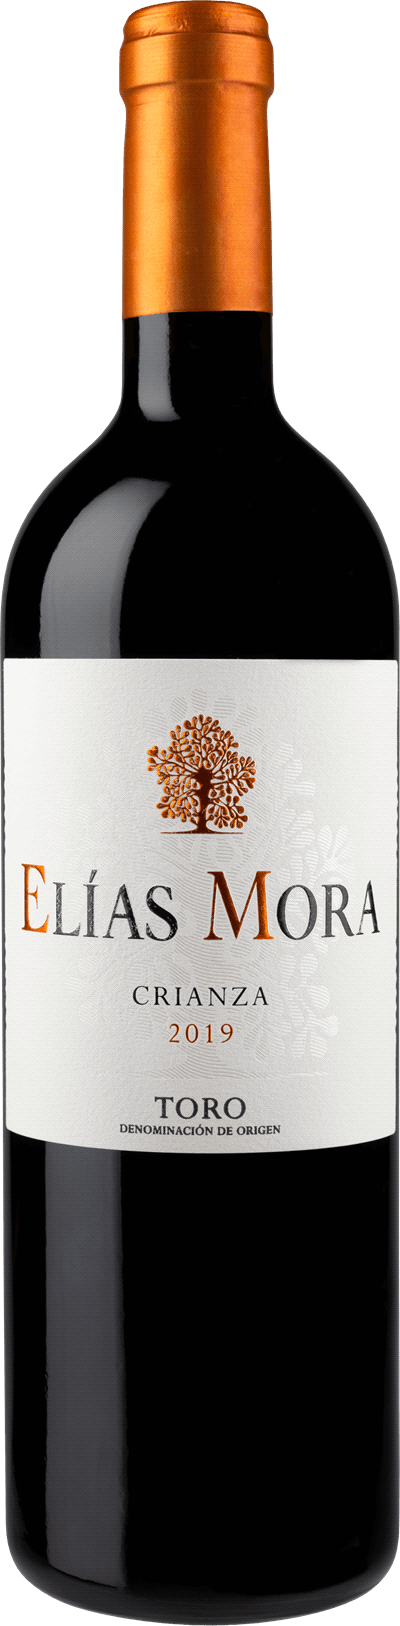 Elias Mora Crianza 